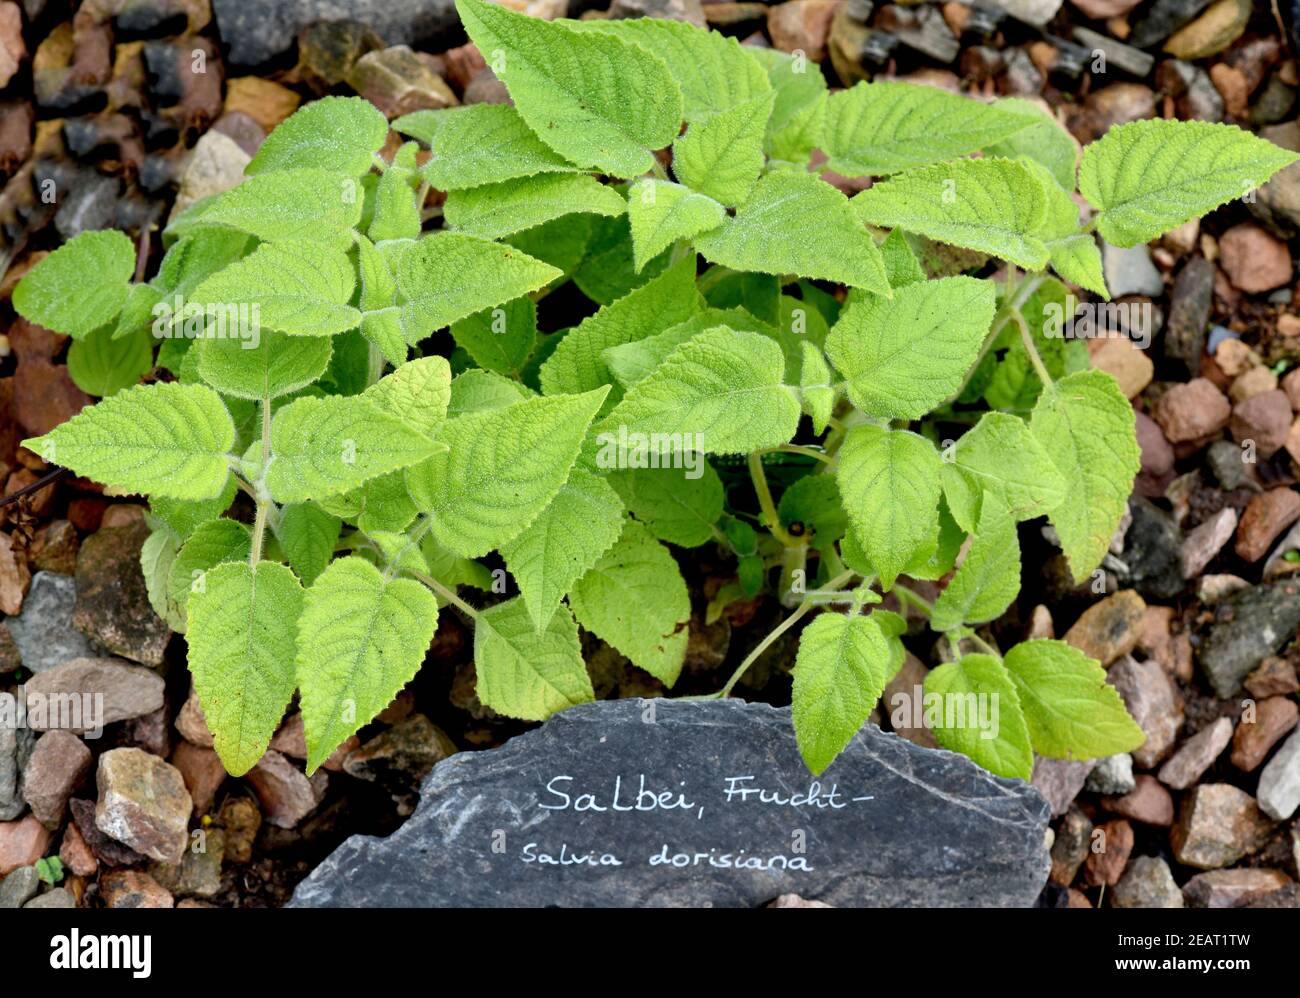 Salbei, Frucht-, Salvia Dorisiana Foto Stock